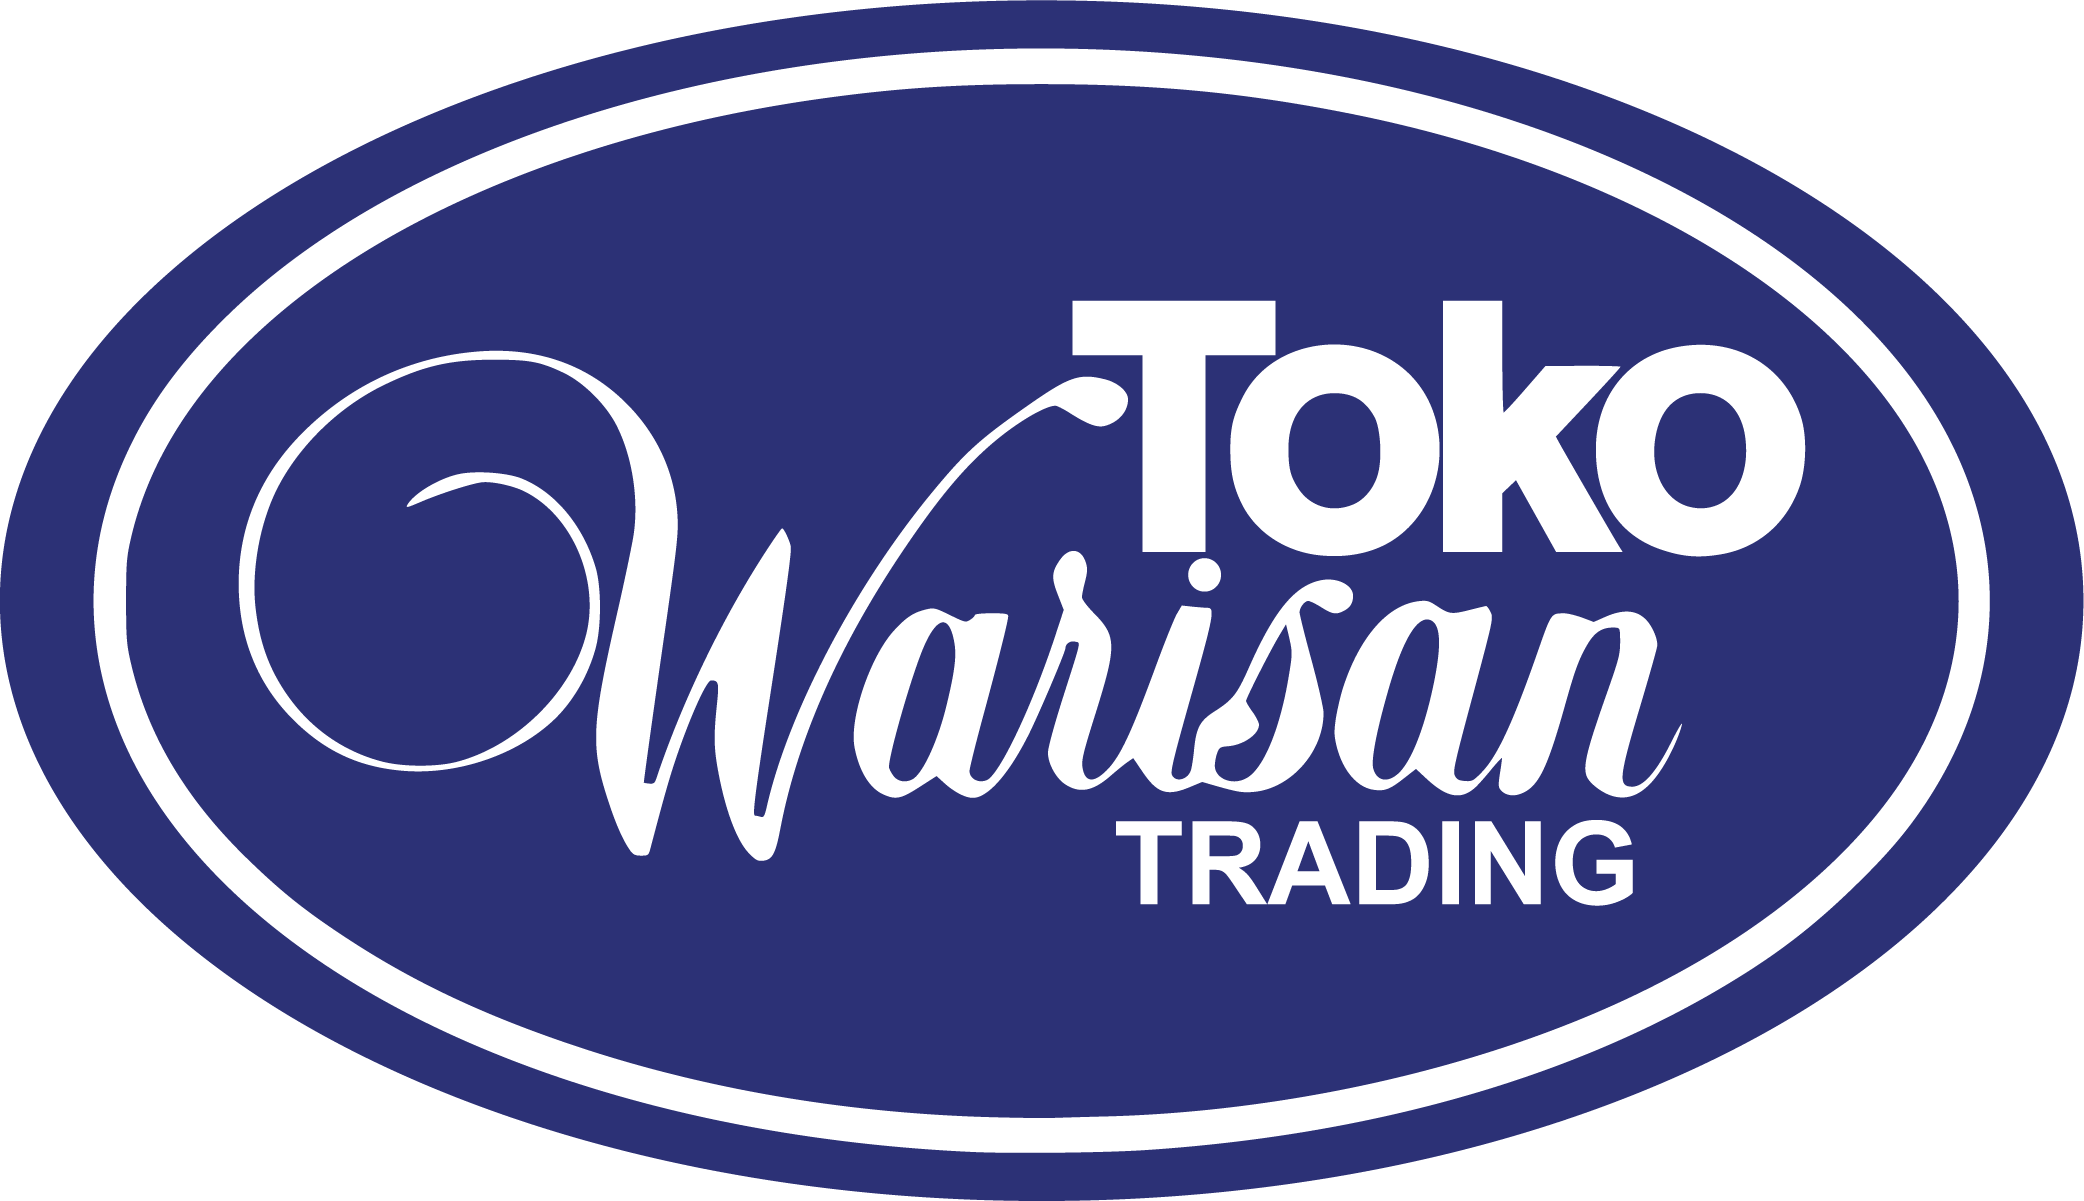 toko warisan trading logo